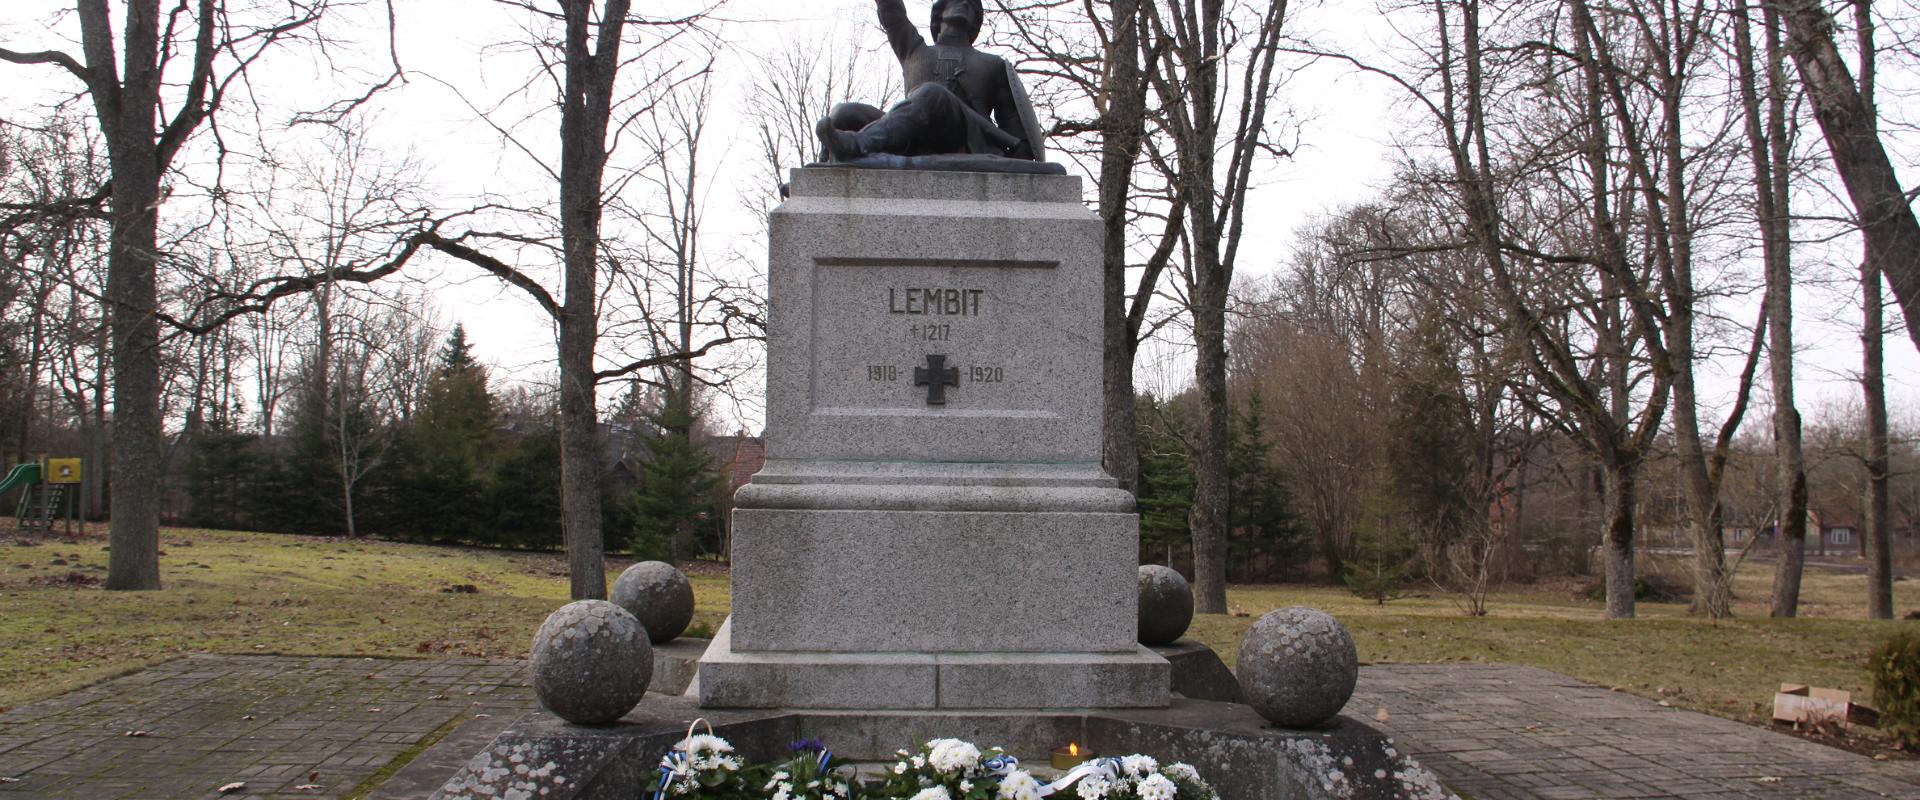 Lembitu-Denkmal für die Gefallenen des Unabhängigkeitskrieges in Suure-Jaani